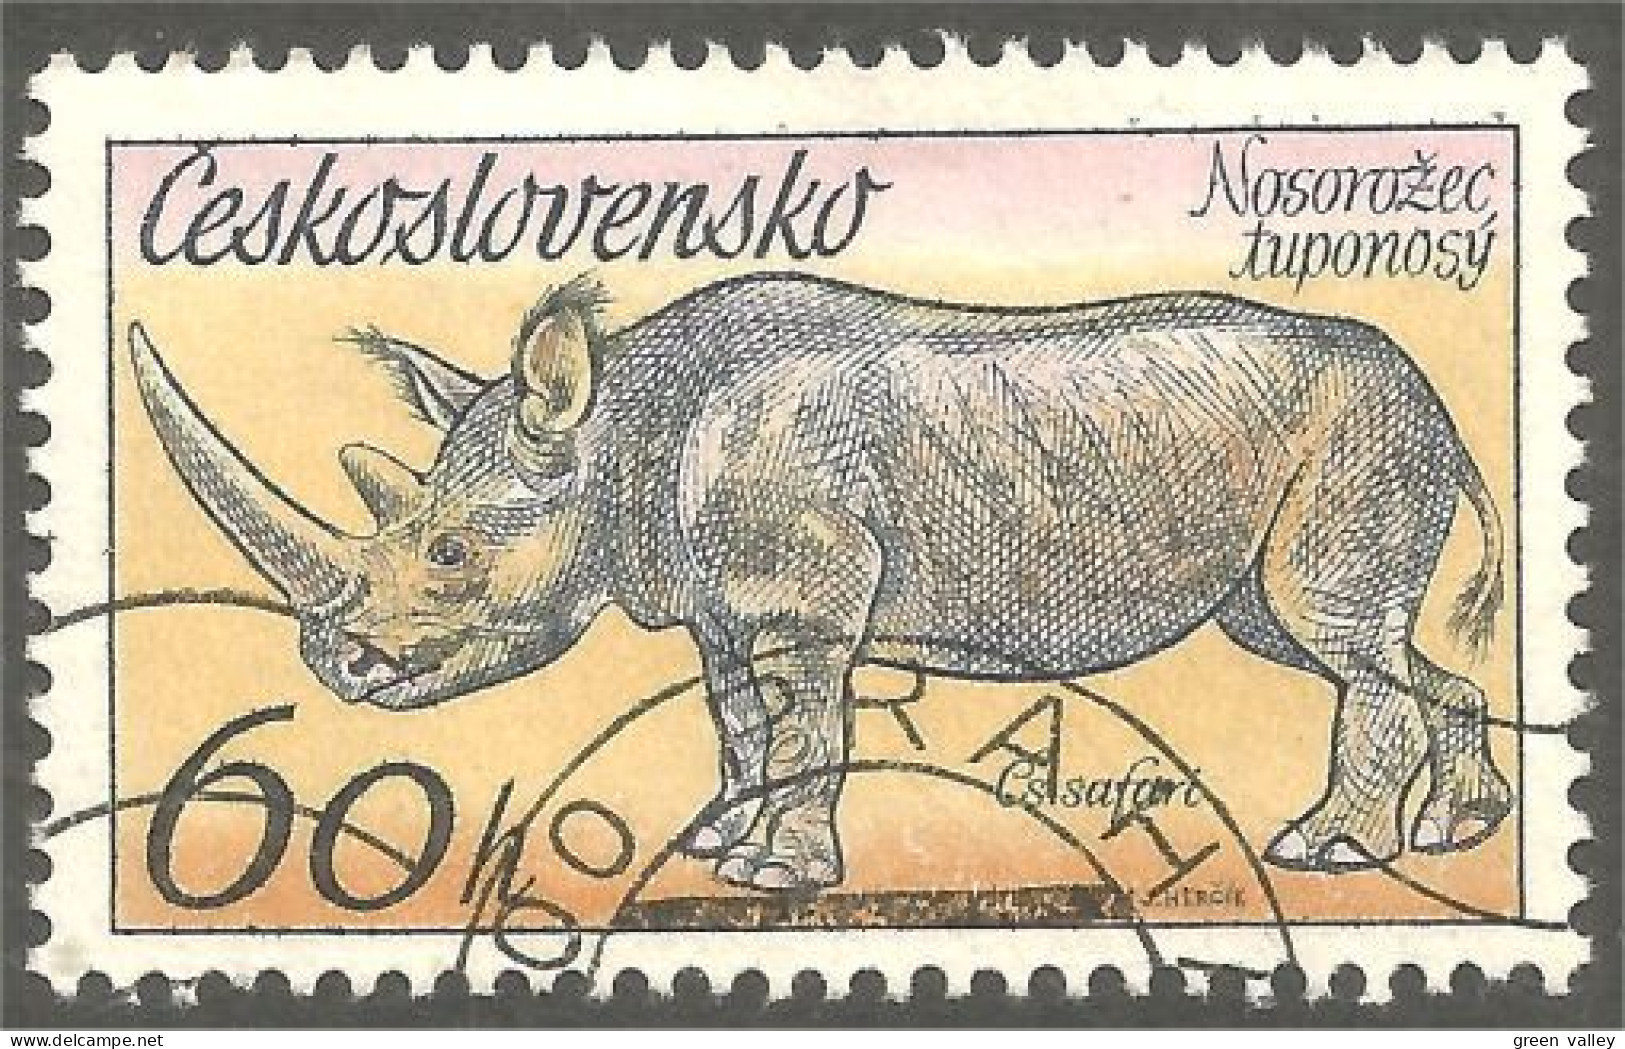 AS-13 Ceskoslovenko Rhinocéros Rinoceronte Nashorn Neushoorn - Rinoceronti